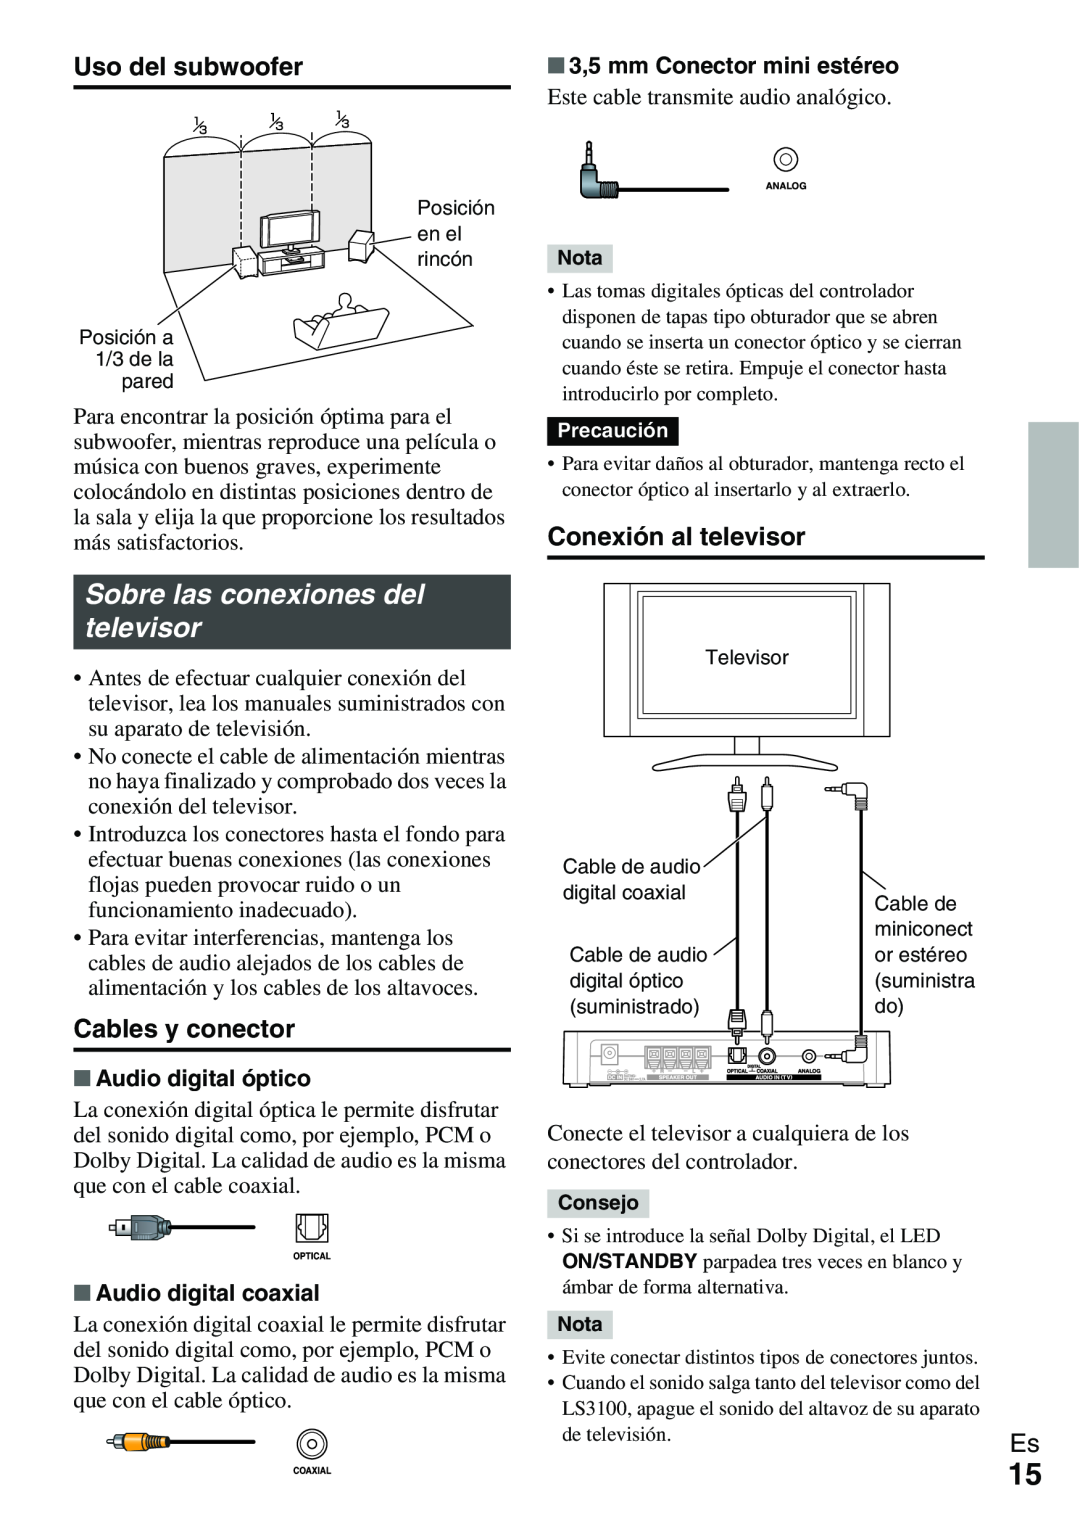 Onkyo Ls 3100 manual Sobre las conexiones del televisor, Uso del subwoofer, Conexión al televisor, Cables y conector 